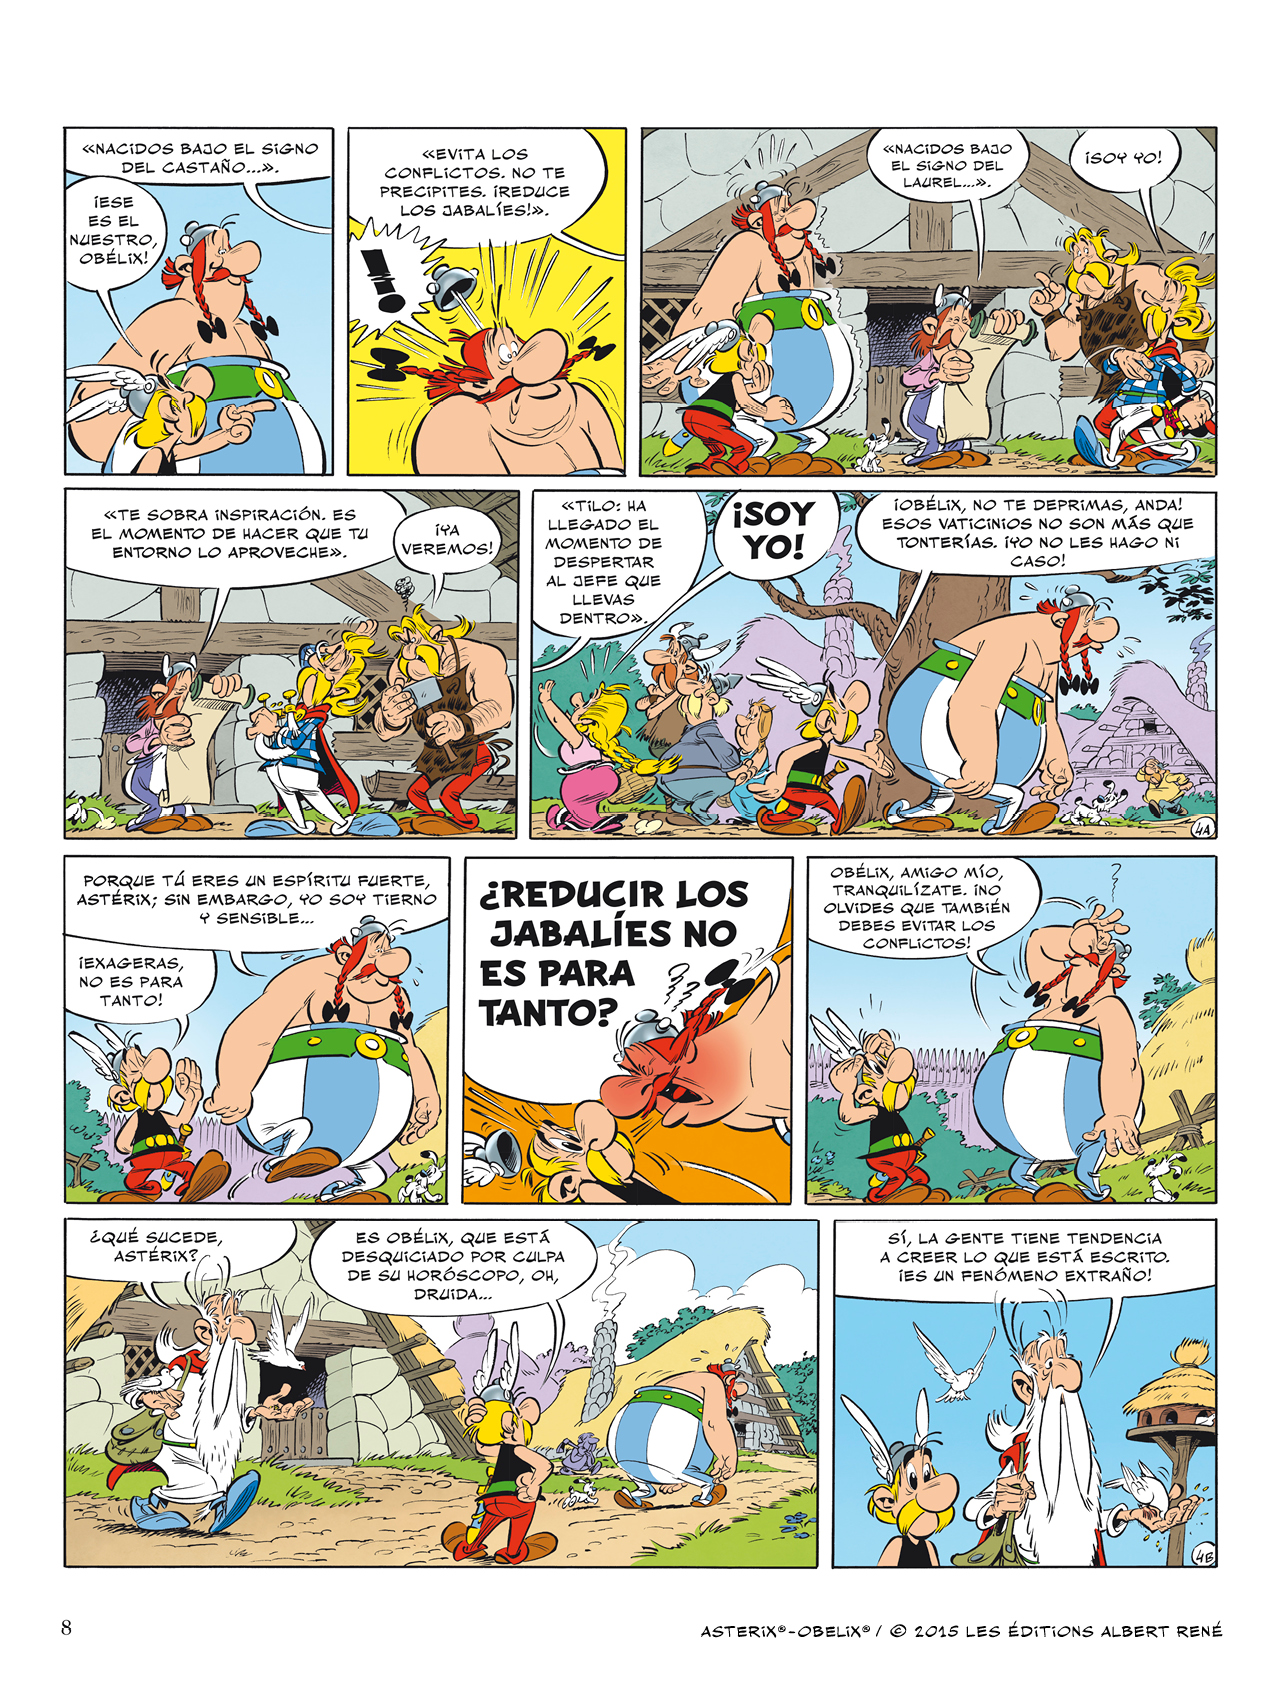 asterix y obelix pdf